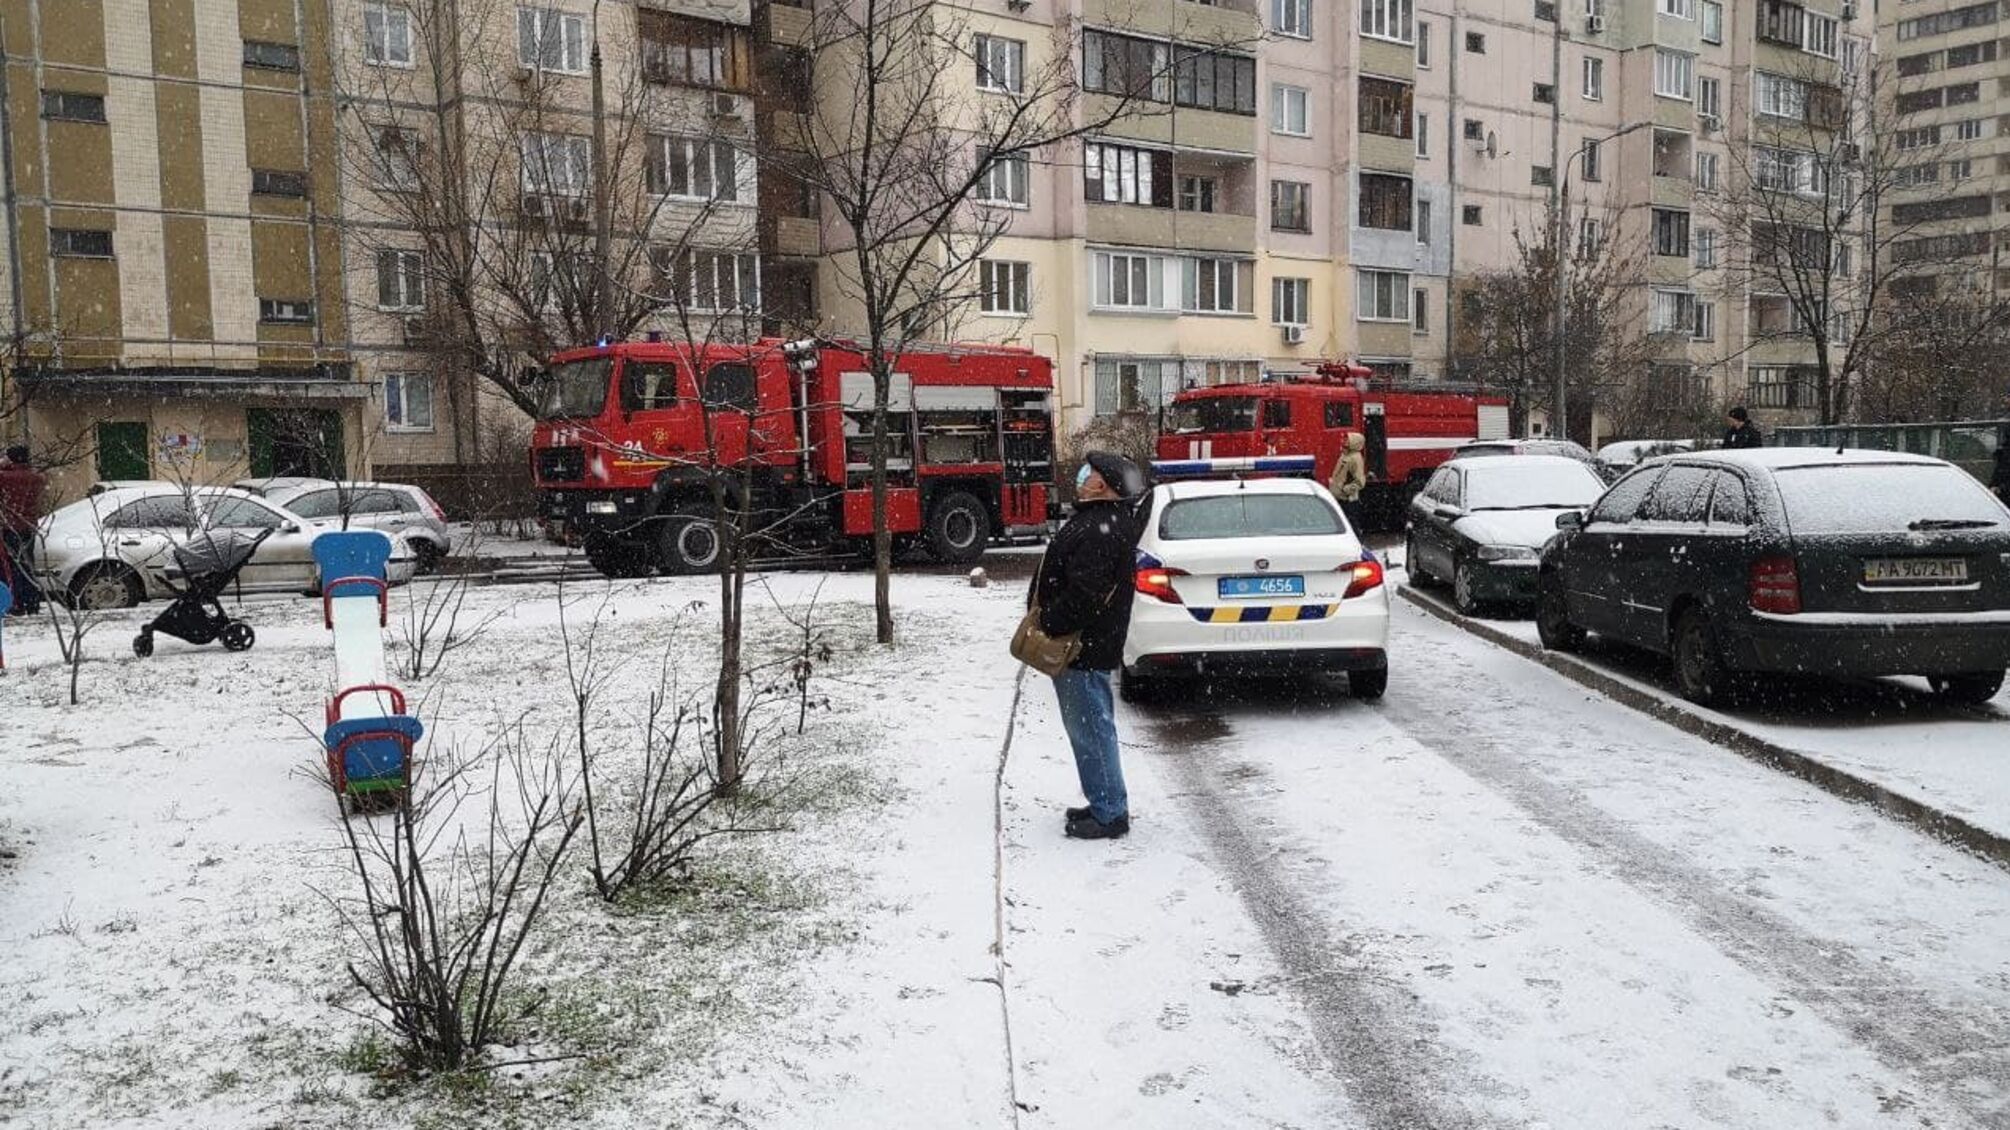 м. Київ: під час гасіння пожежі в житловому будинку було виведено 6 осіб на безпечну відстань, з них 2 дітей